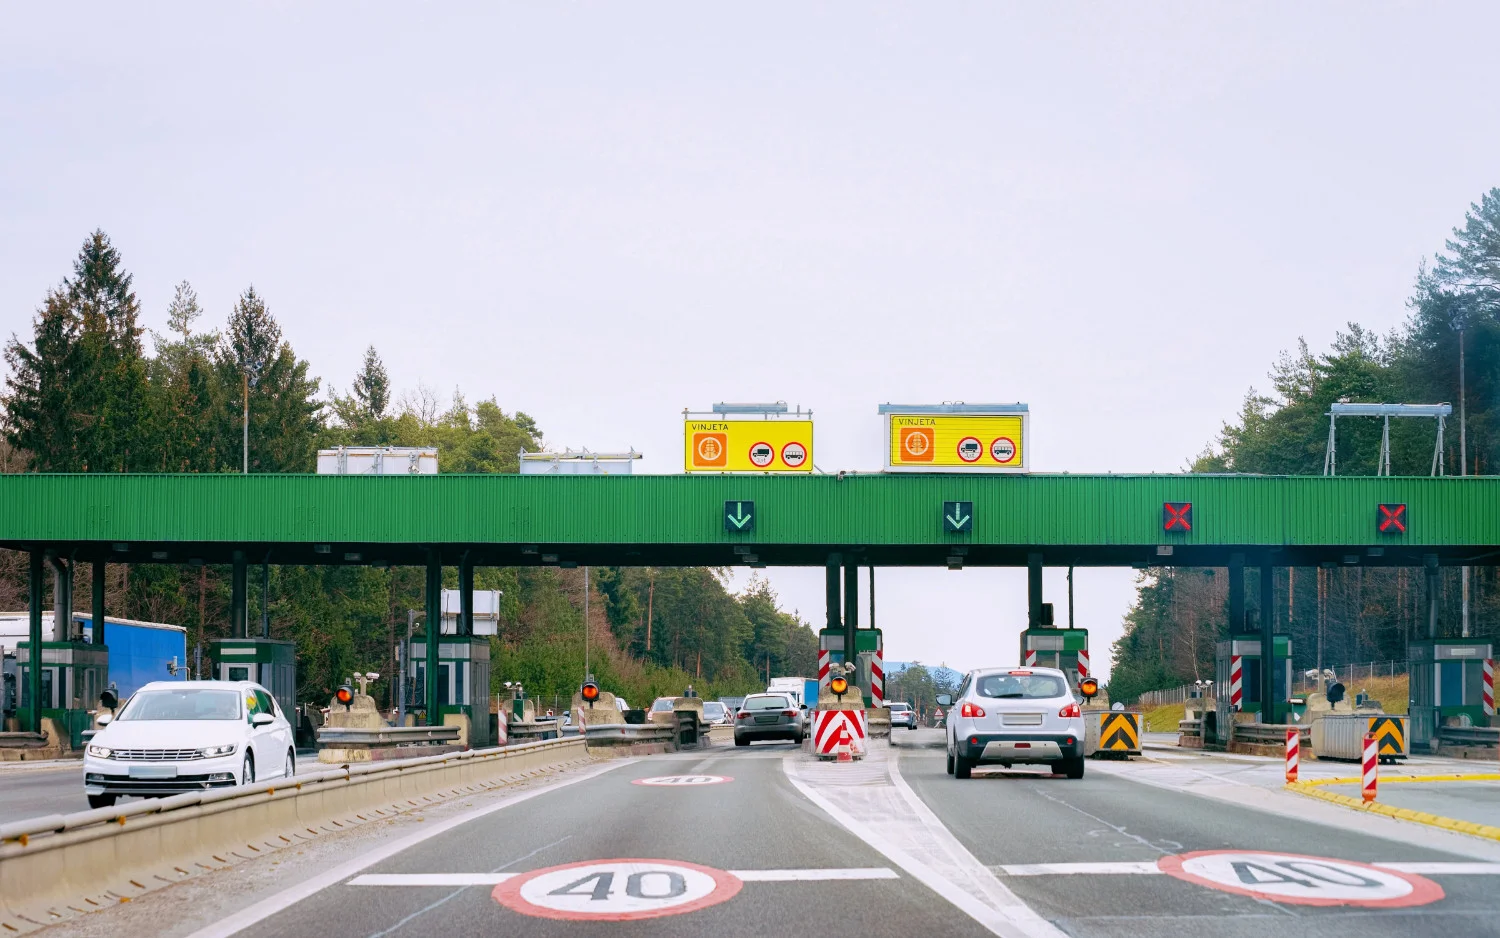 Aby korzystać z autostrad, opłaty drogowe (tam, gdzie jest to możliwe) są dokonywane przy użyciu obowiązkowej elektronicznej plakietki, znanej jako e-winieta.